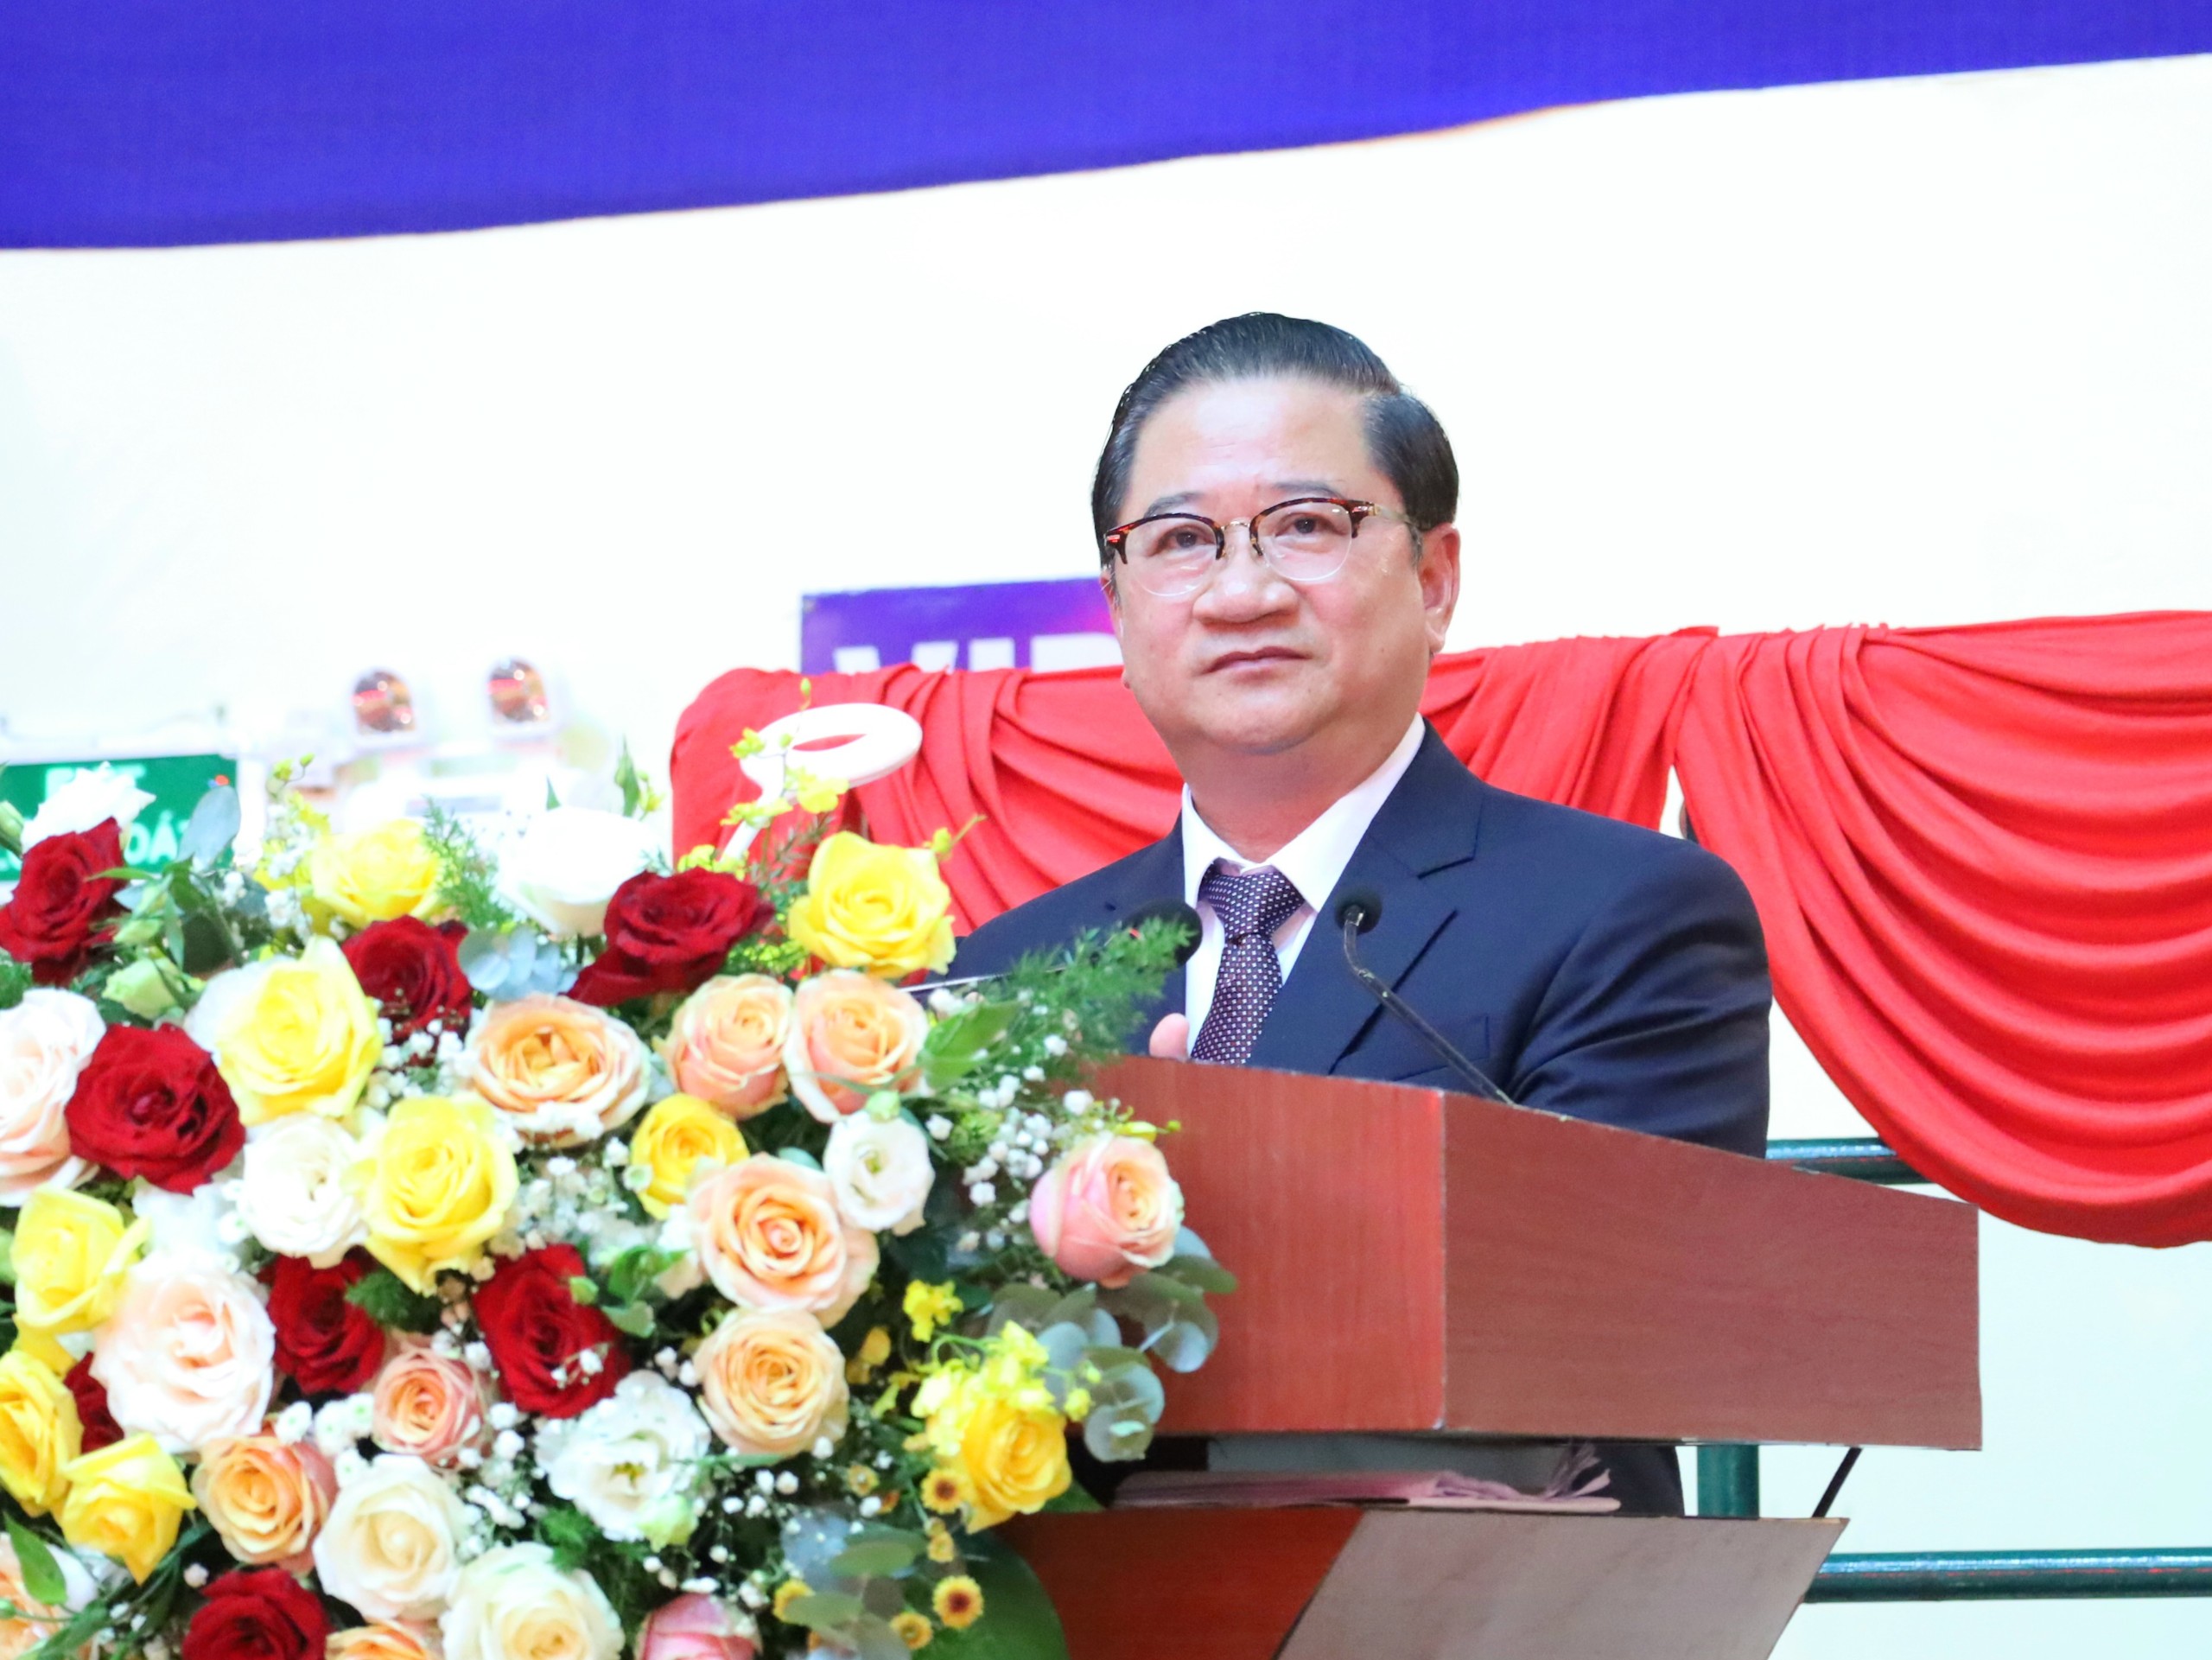 Ông Trần Việt Trường – Phó Bí thư Thành ủy, Chủ tịch UBND TP. Cần Thơ phát biểu chỉ đạo tại lễ khai mạc đại hội.